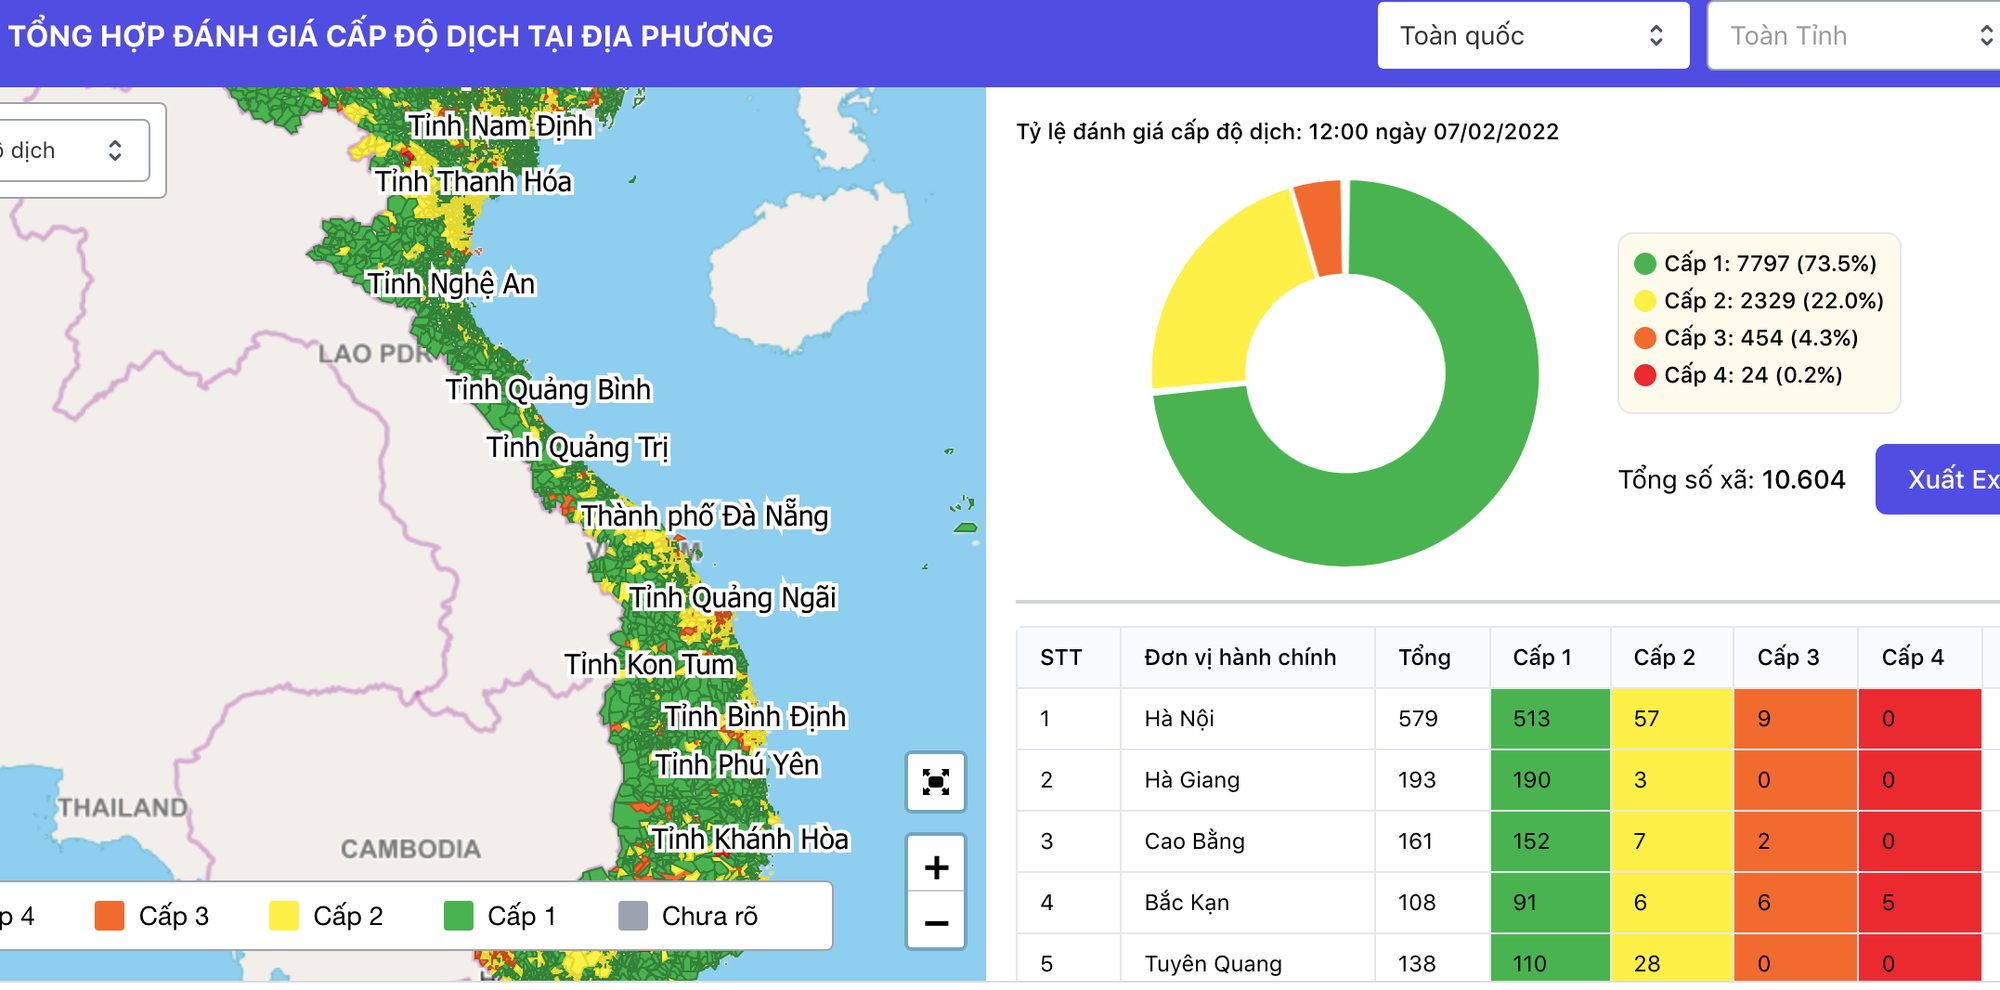 Hãy cập nhật những bản đồ Việt Nam vector đẹp nhất để dễ dàng tìm kiếm và phân tích dữ liệu cho công việc hoặc học tập. Với các vector được thiết kế chuyên nghiệp, bạn sẽ có những tài liệu hỗ trợ hoàn hảo để khám phá đất nước.